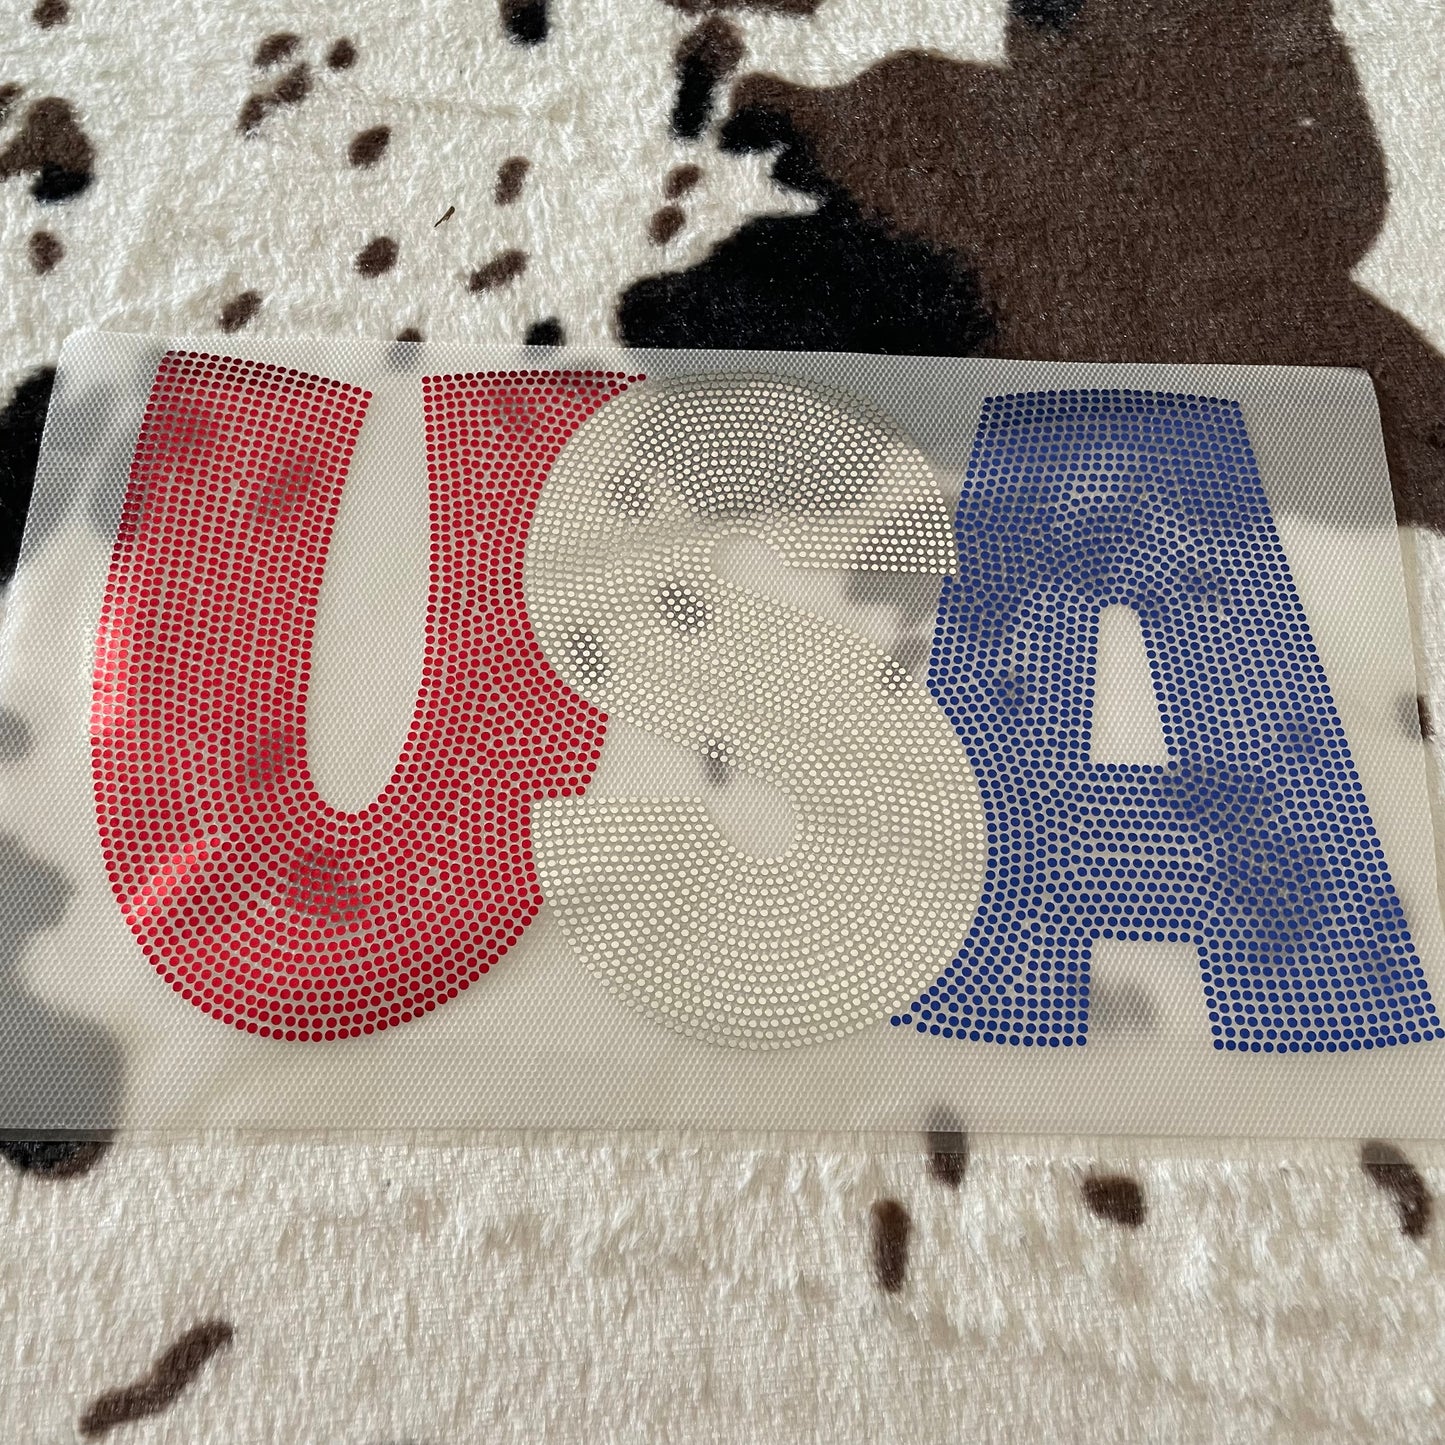 USA (Pocket/Hat)- 3.3" wide Spangle